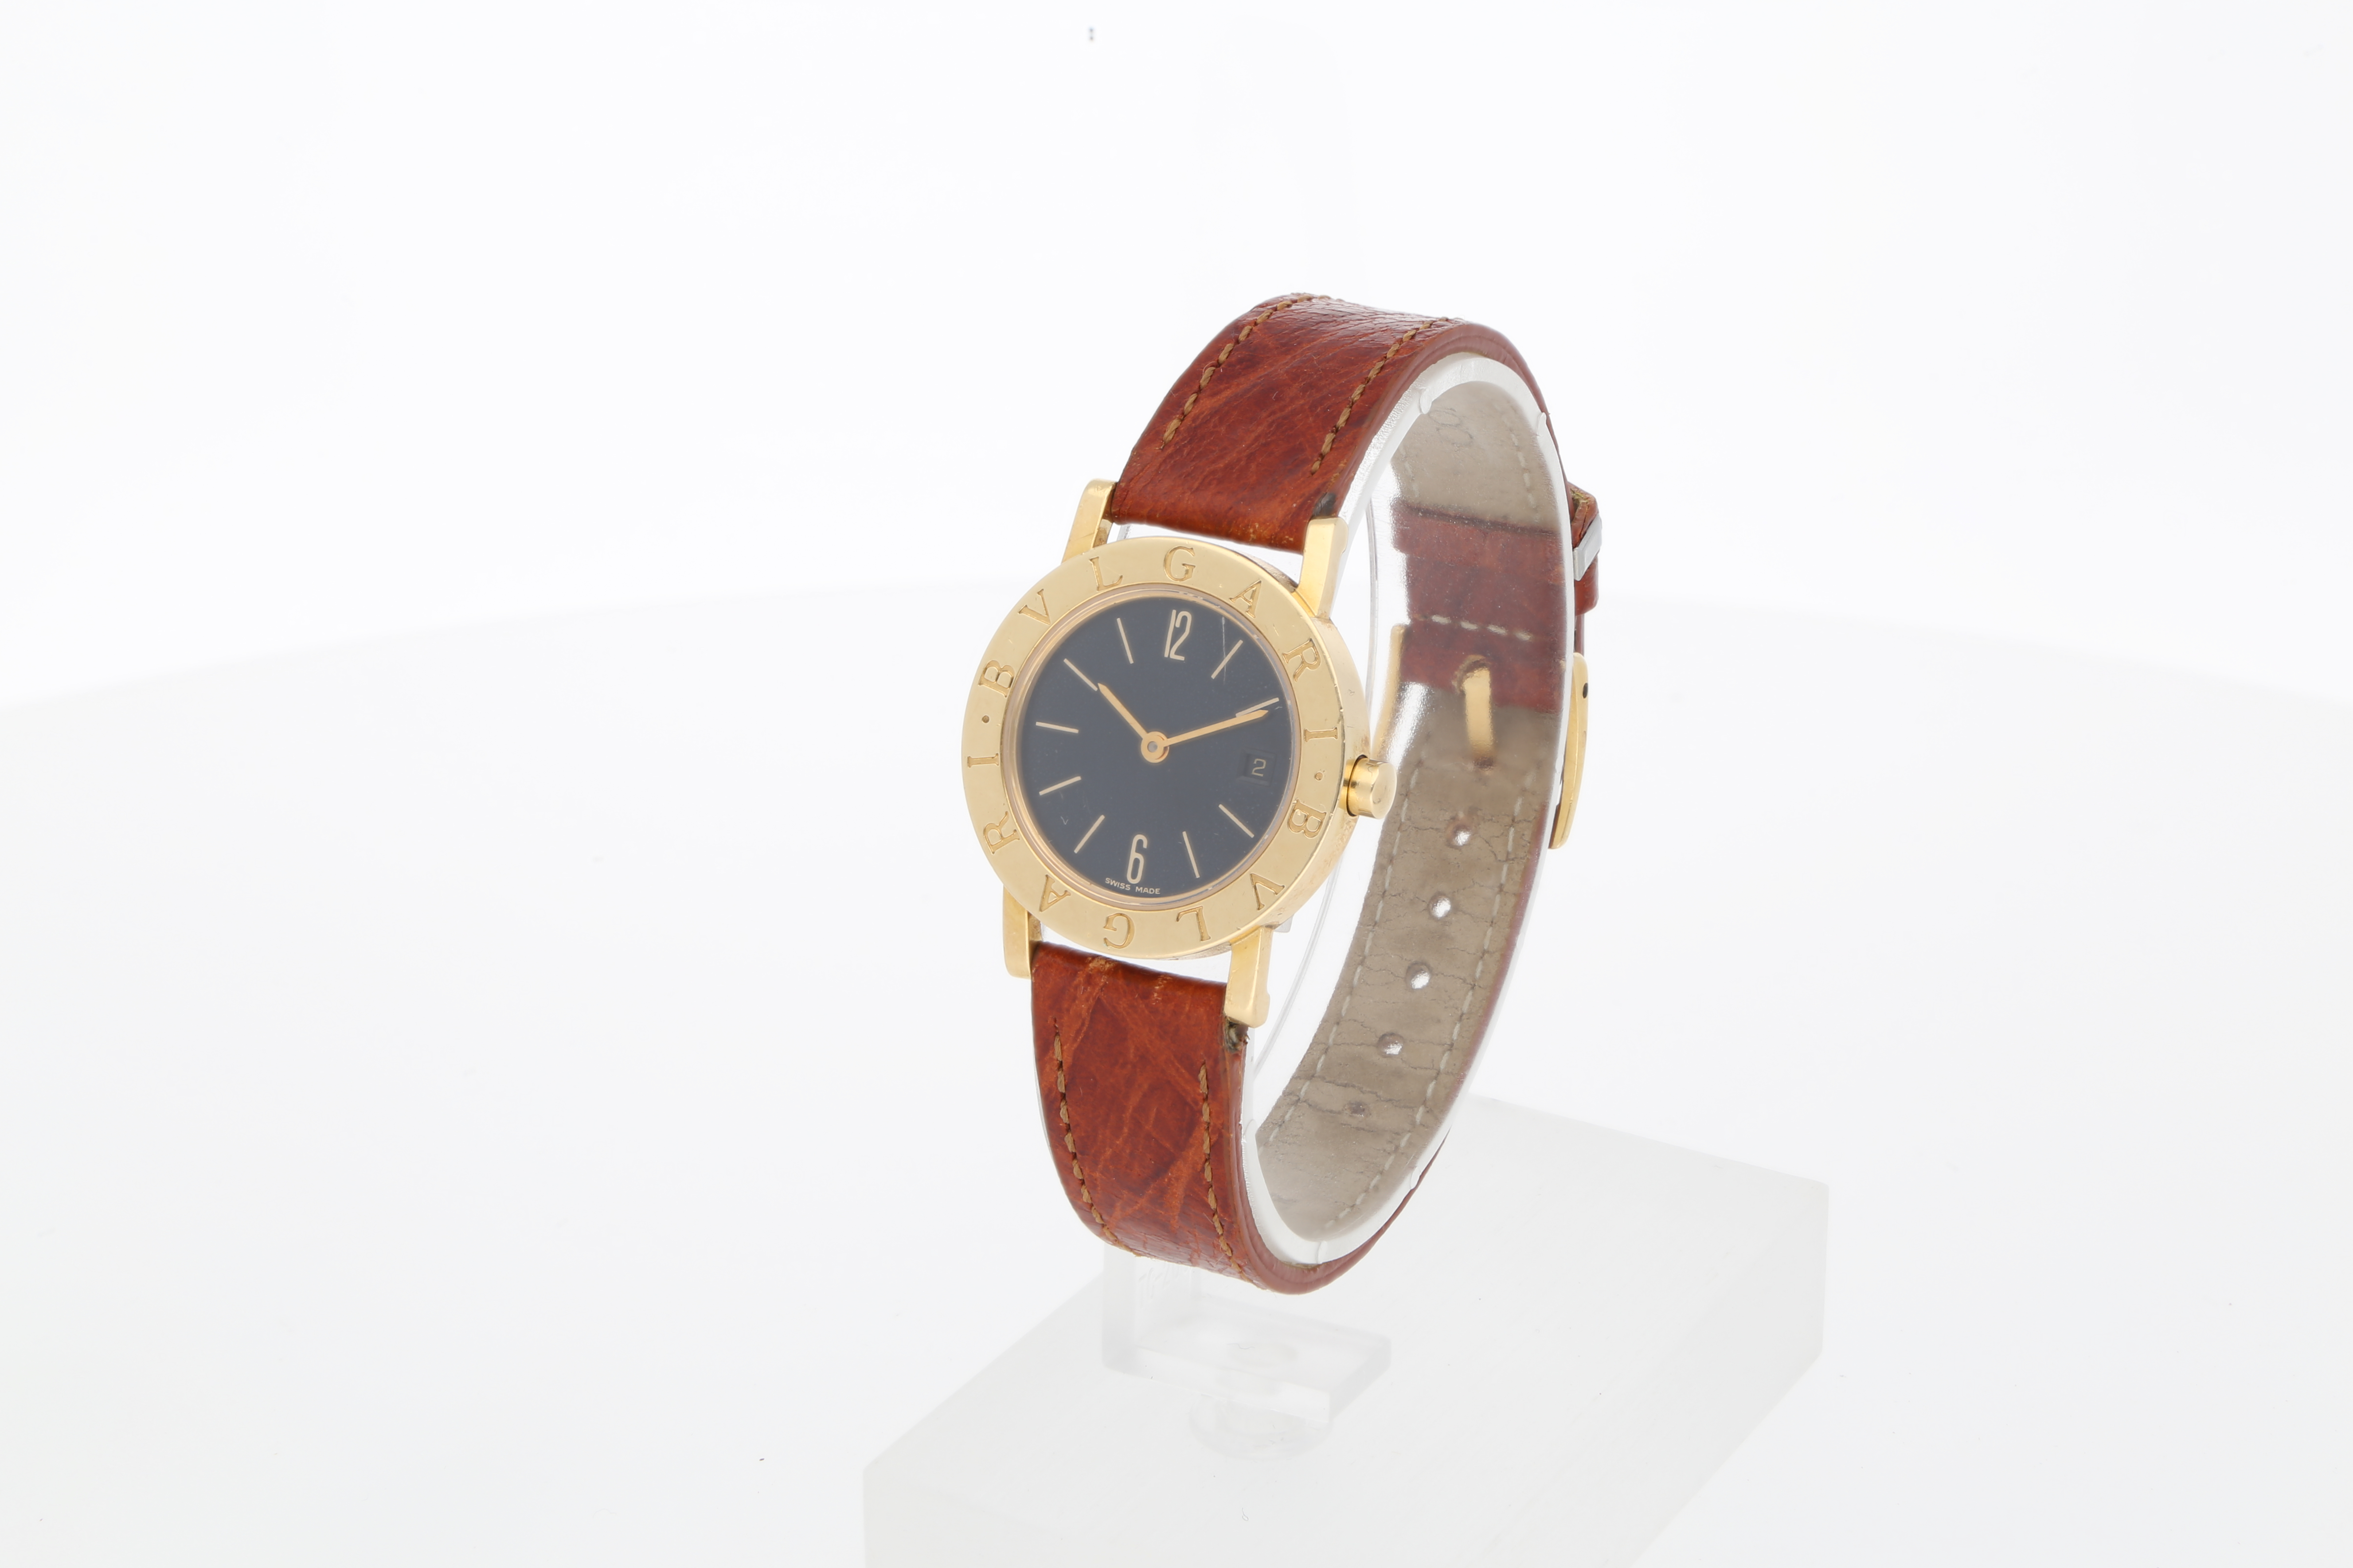 Second Hand Omega Uhr online kaufen auf kaleaz.